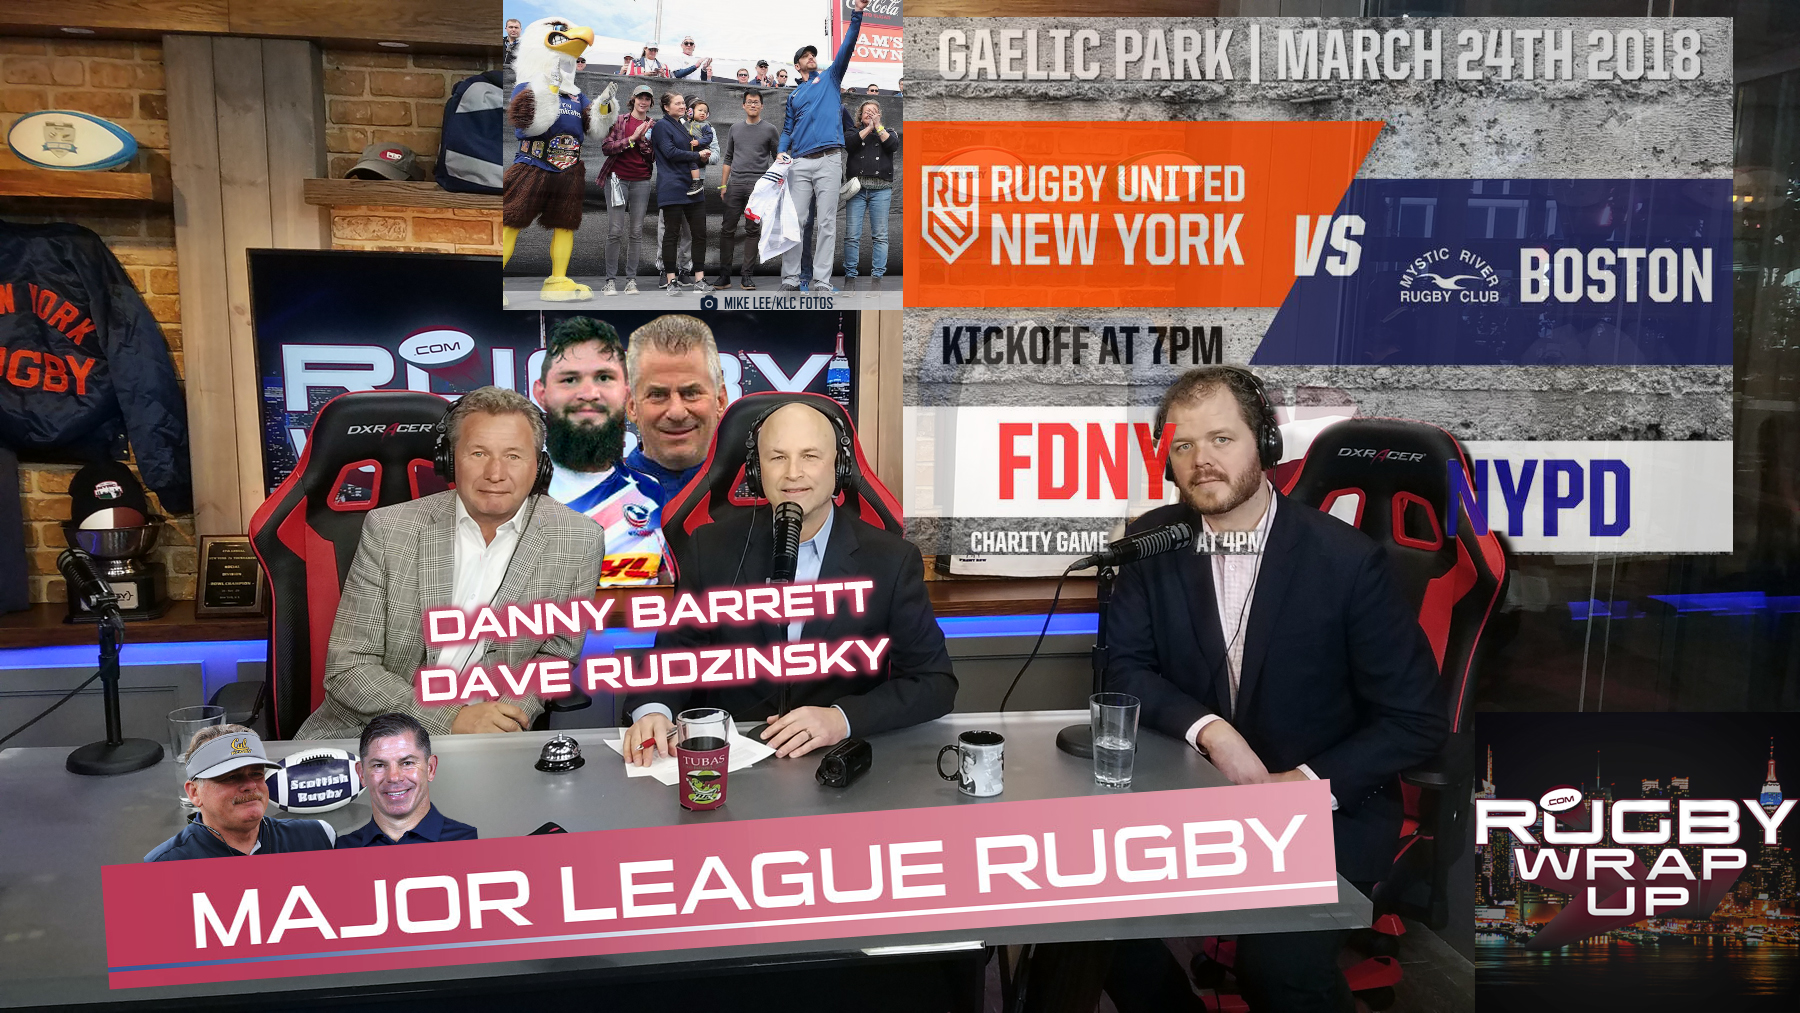 Rugby_Wrap_Up, Danny_Barrett, Dave_Rudzinksy, MLR